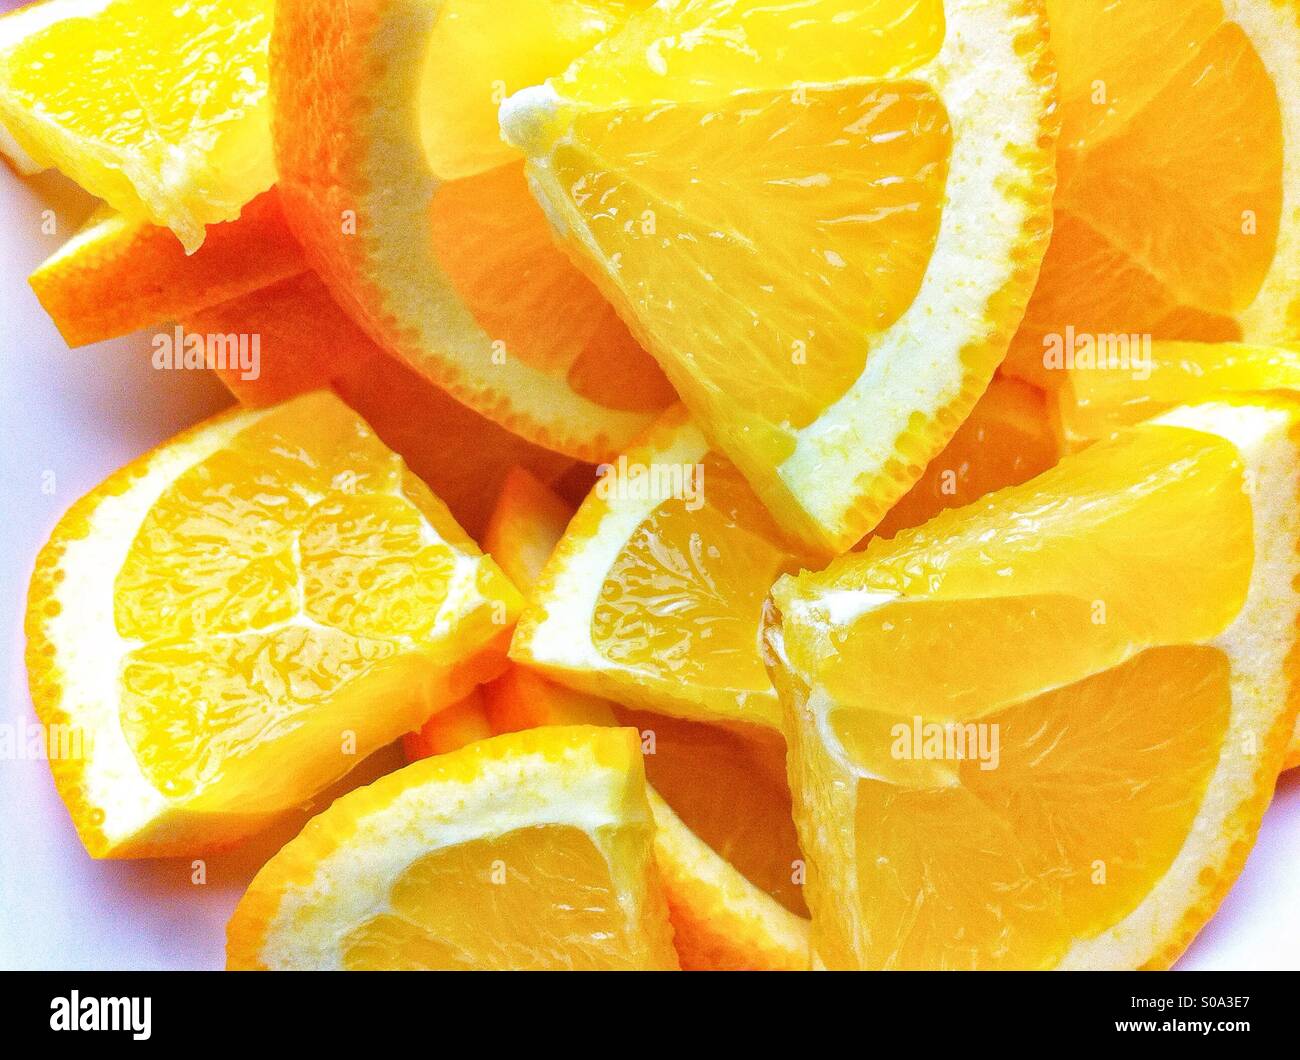 Pile of orange slices Stock Photo